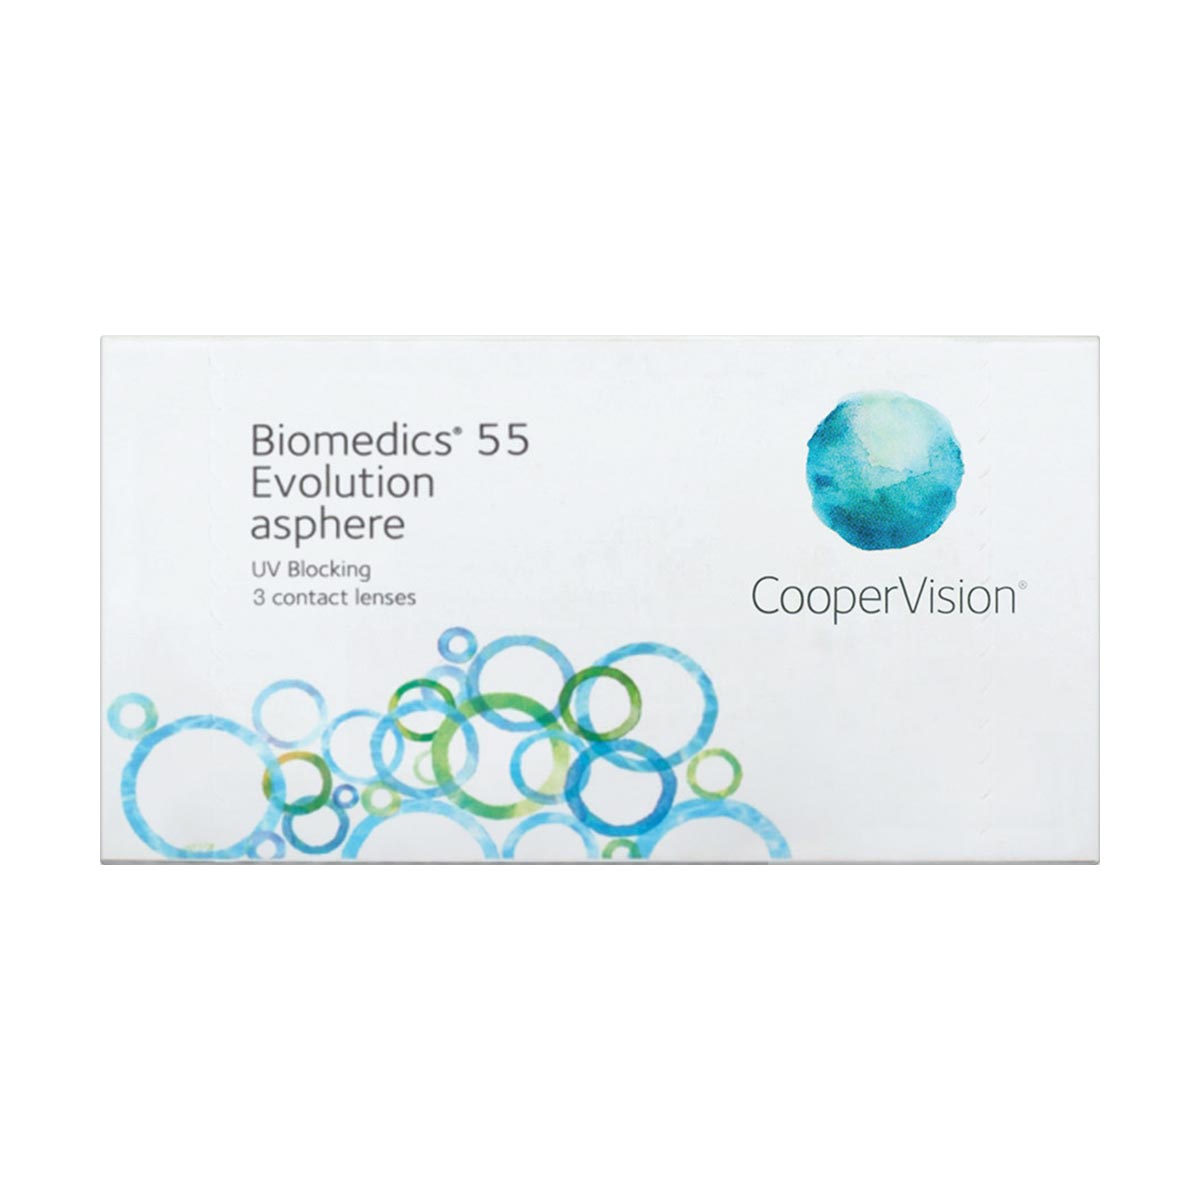 Biomedics®1 Day Extra 90 lentes - Lentes de Contacto - Lentes de Contacto Diárias